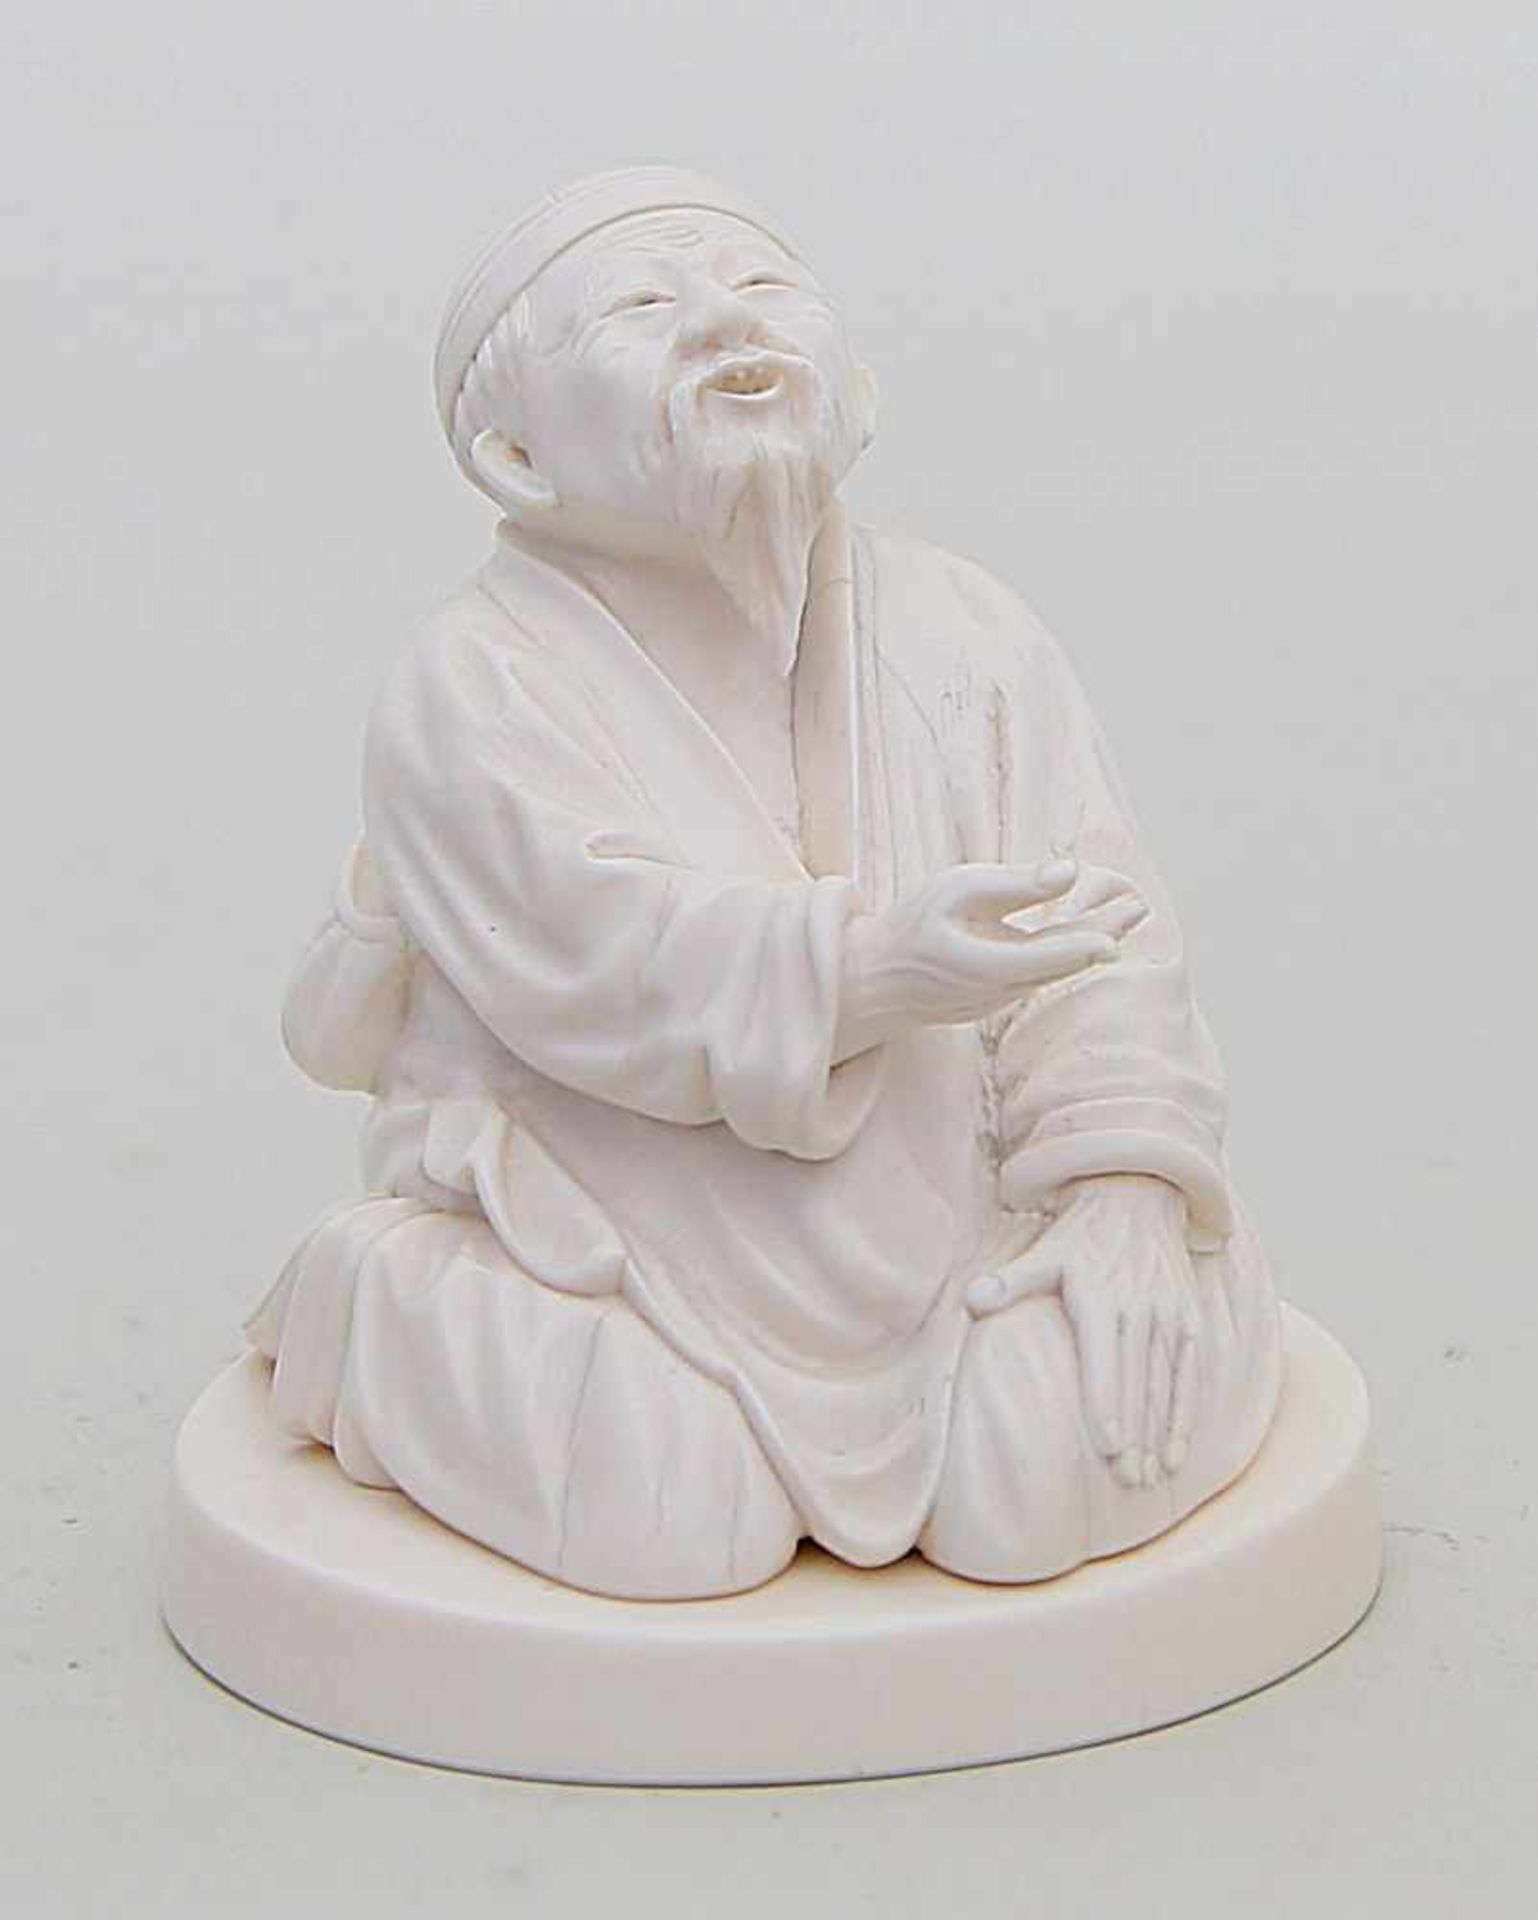 Skulptur eines sitzenden Bettlers.Elfenbein, vollplastisch geschnitzt. Äußerst qualitätvolle und